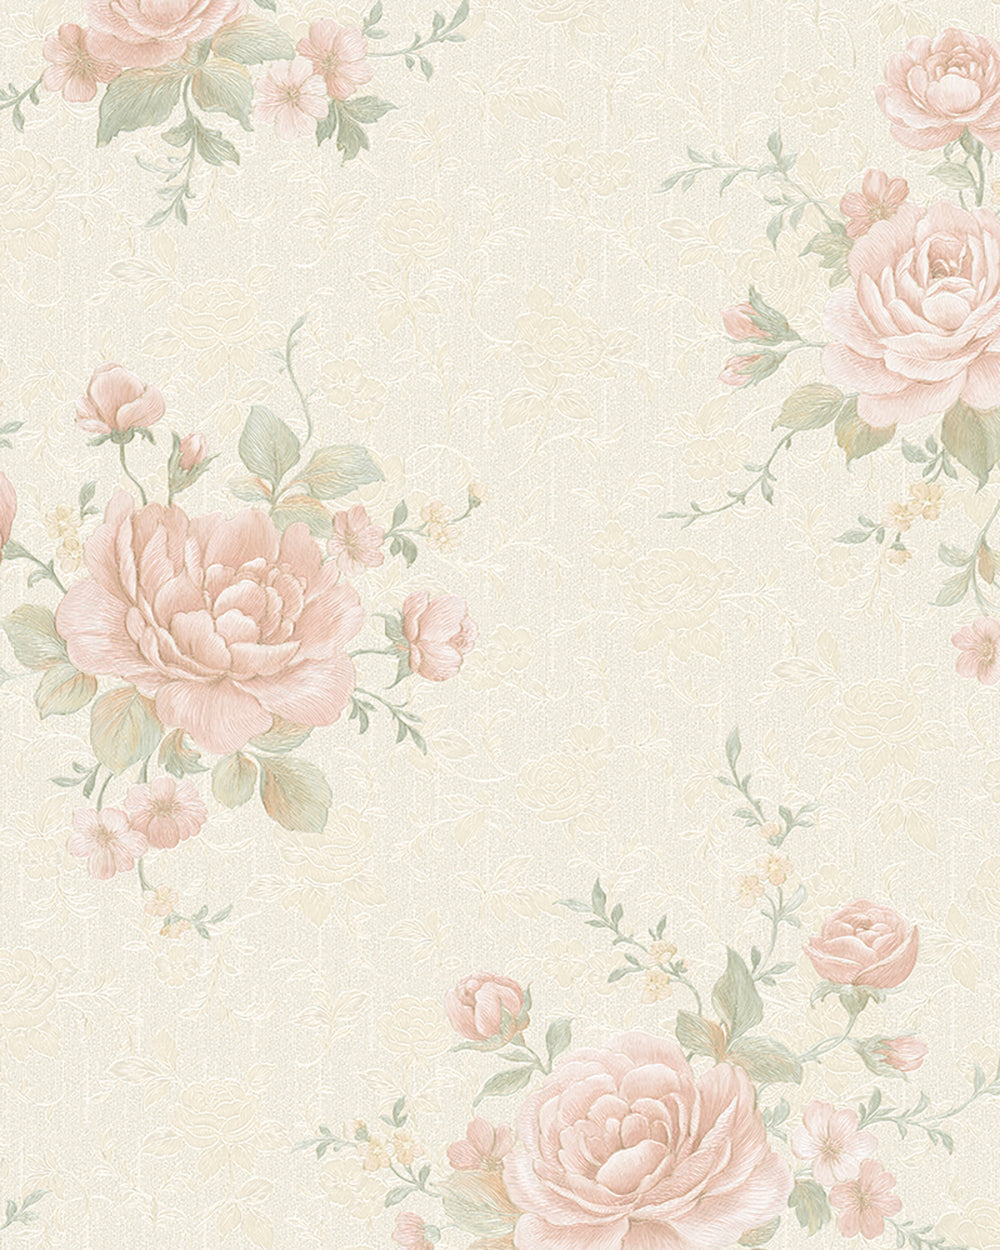 Belvedere - Vintage Roses botanical wallpaper Marburg Roll Pink  30613